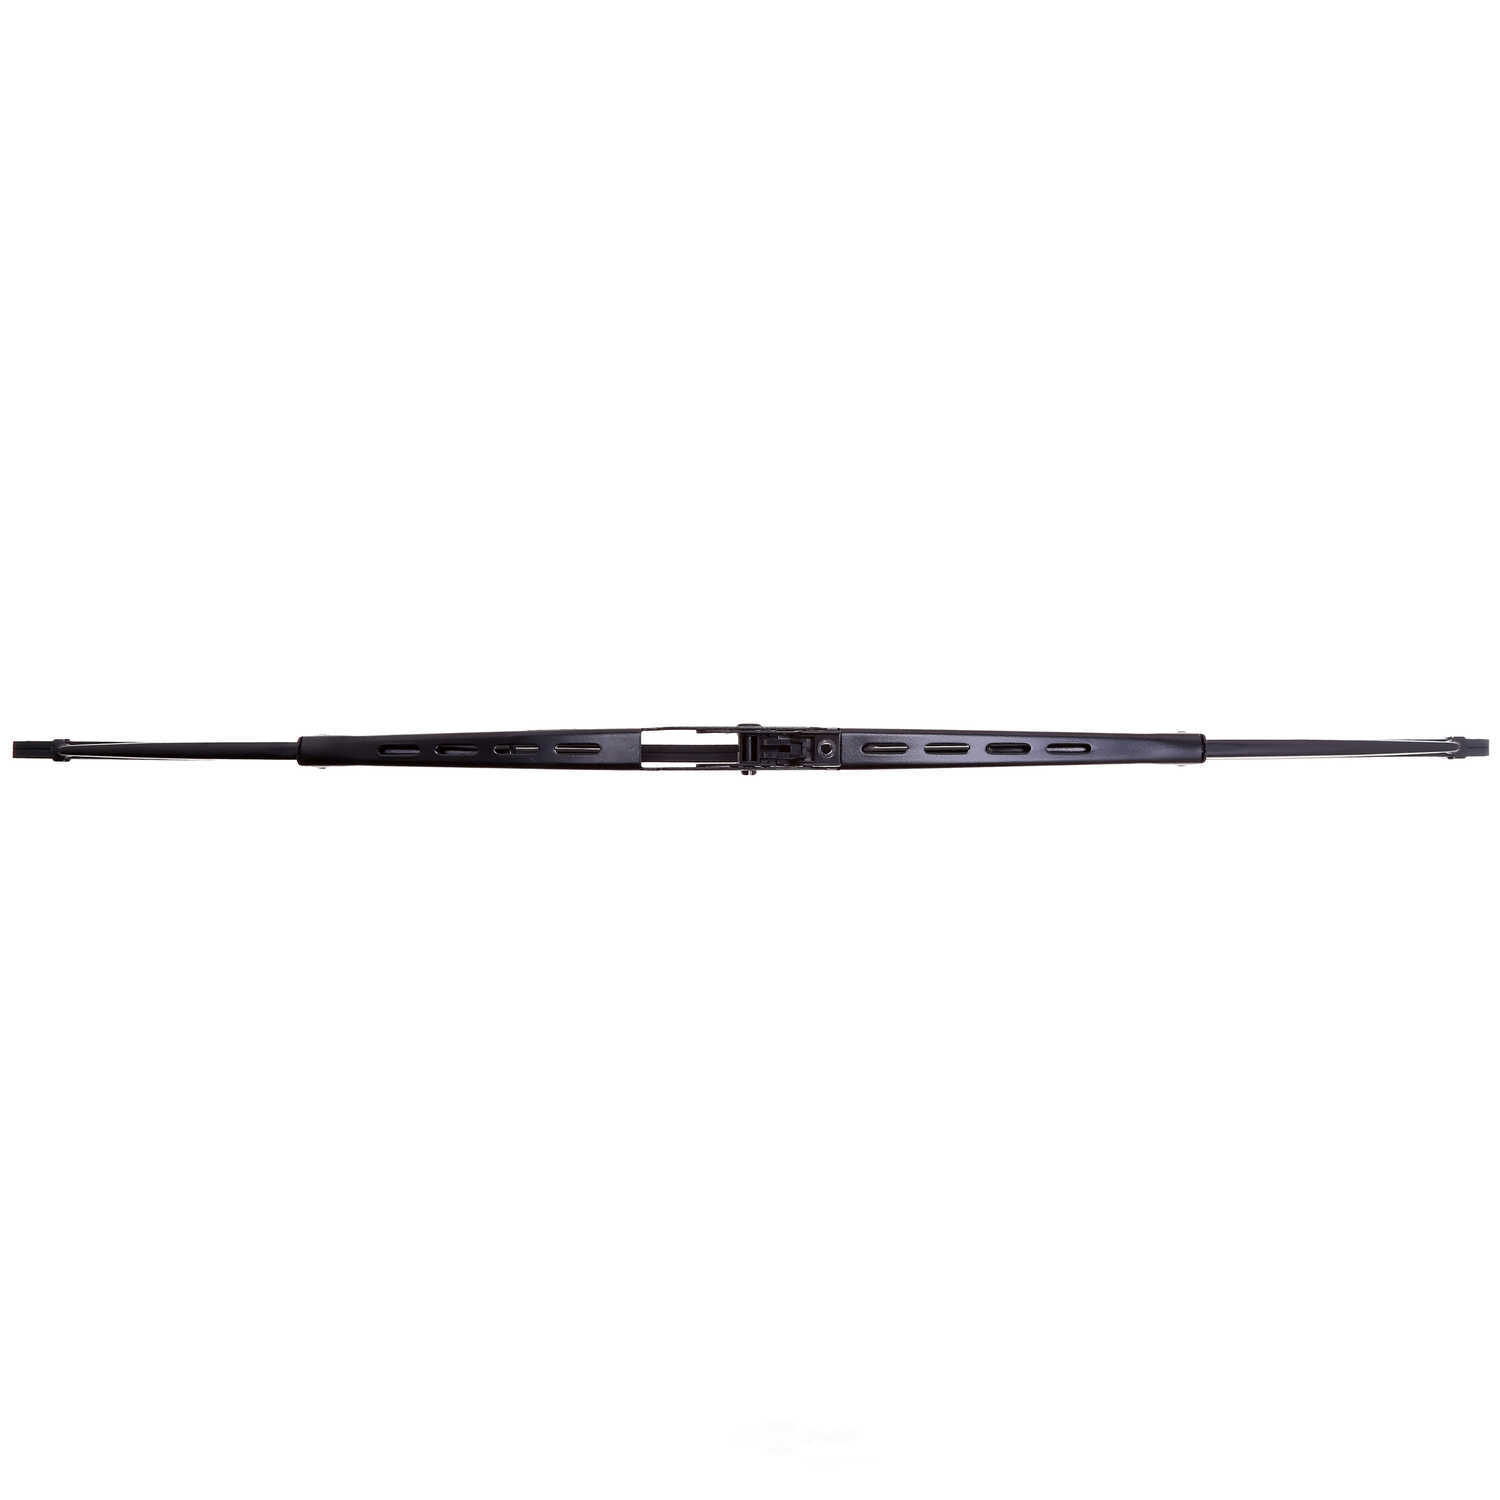 ANCO WIPER PRODUCTS - ANCO 31-Series Wiper Blade - ANC 31-20